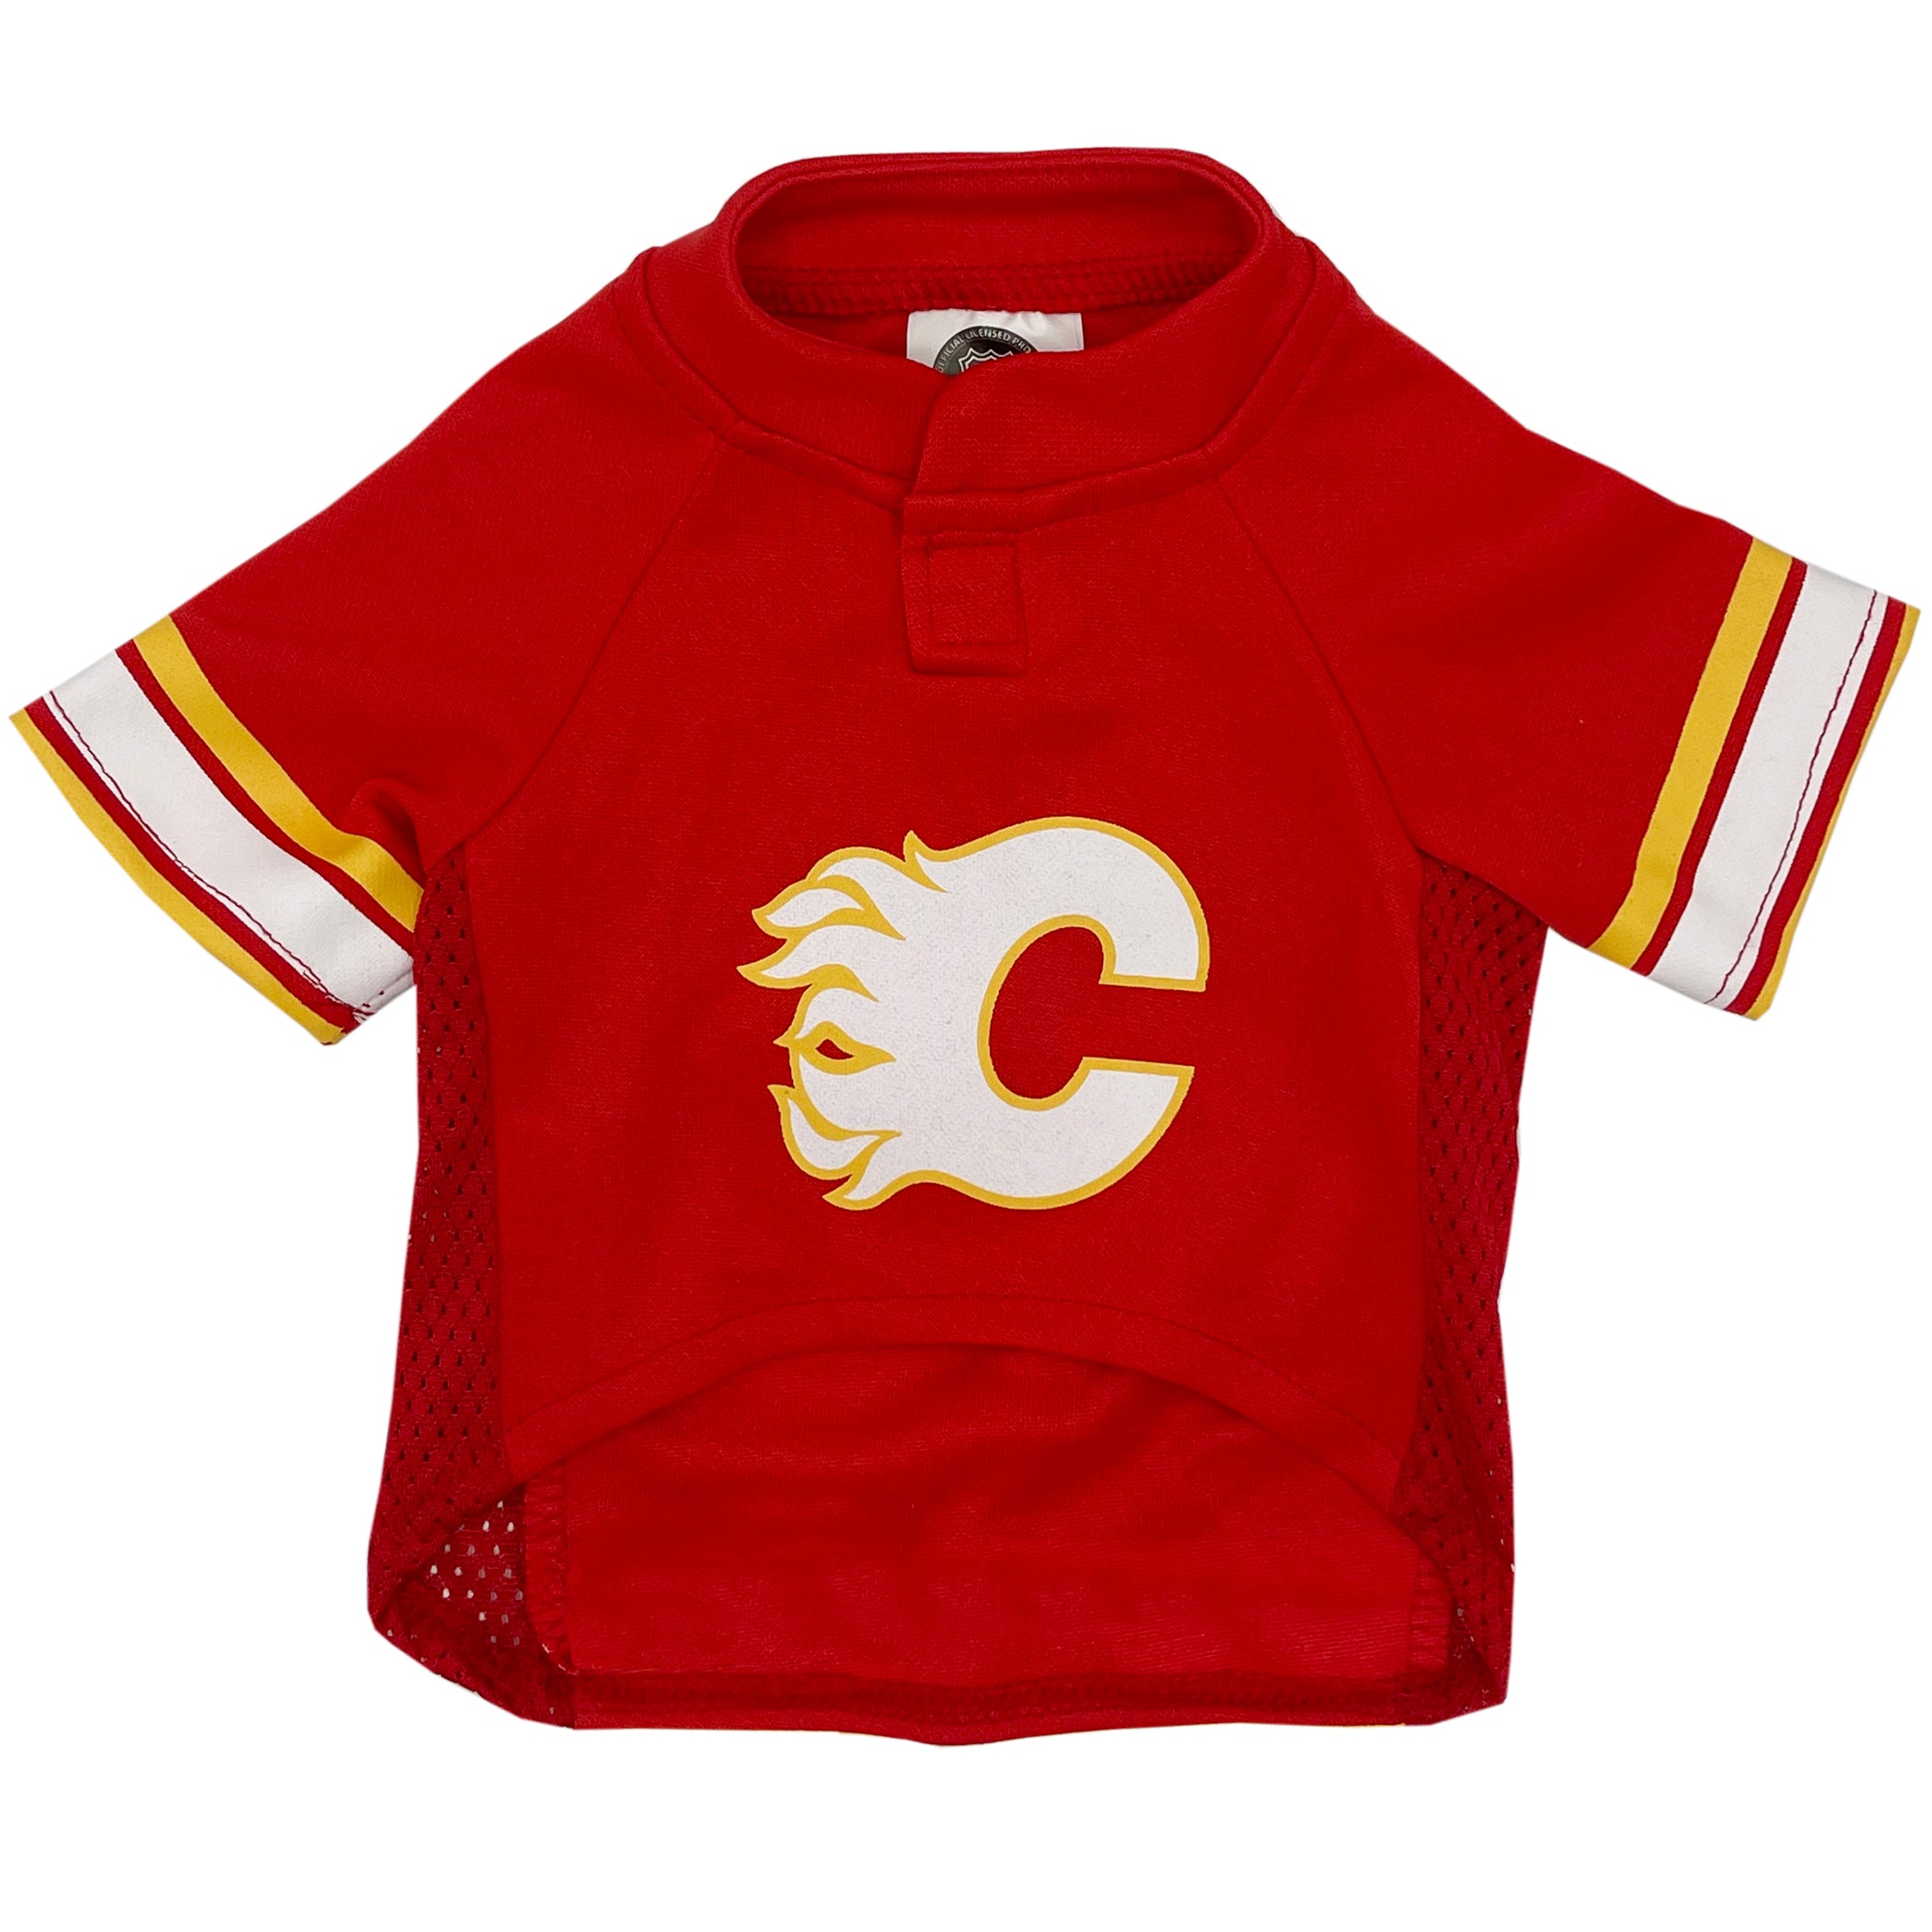 Calgary Flames NHL Dog Jersey Size: Large